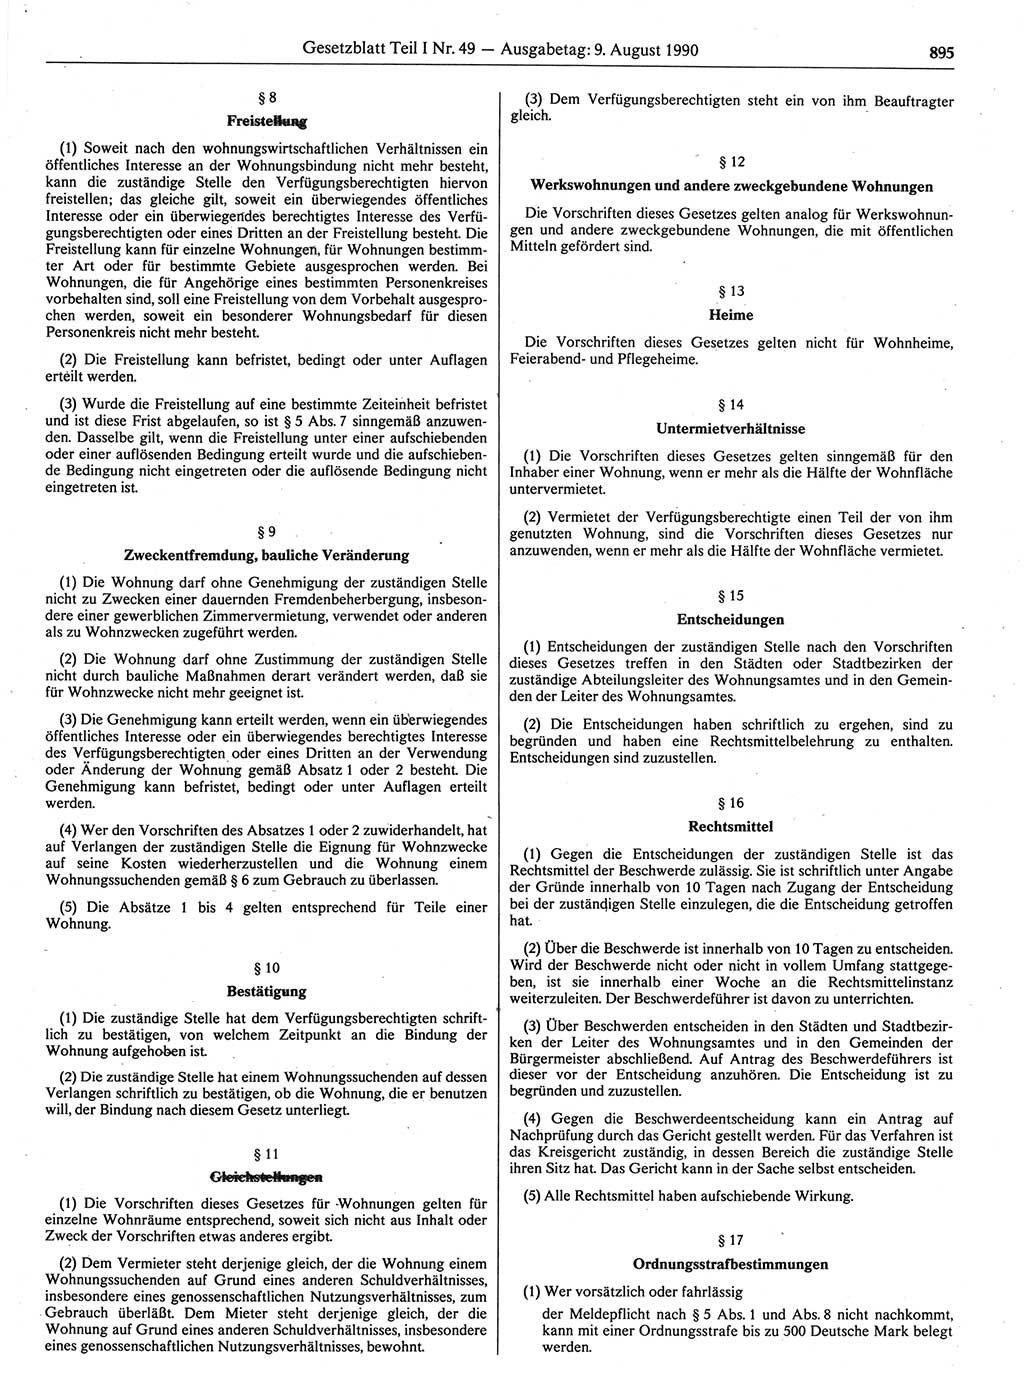 Gesetzblatt (GBl.) der Deutschen Demokratischen Republik (DDR) Teil Ⅰ 1990, Seite 895 (GBl. DDR Ⅰ 1990, S. 895)